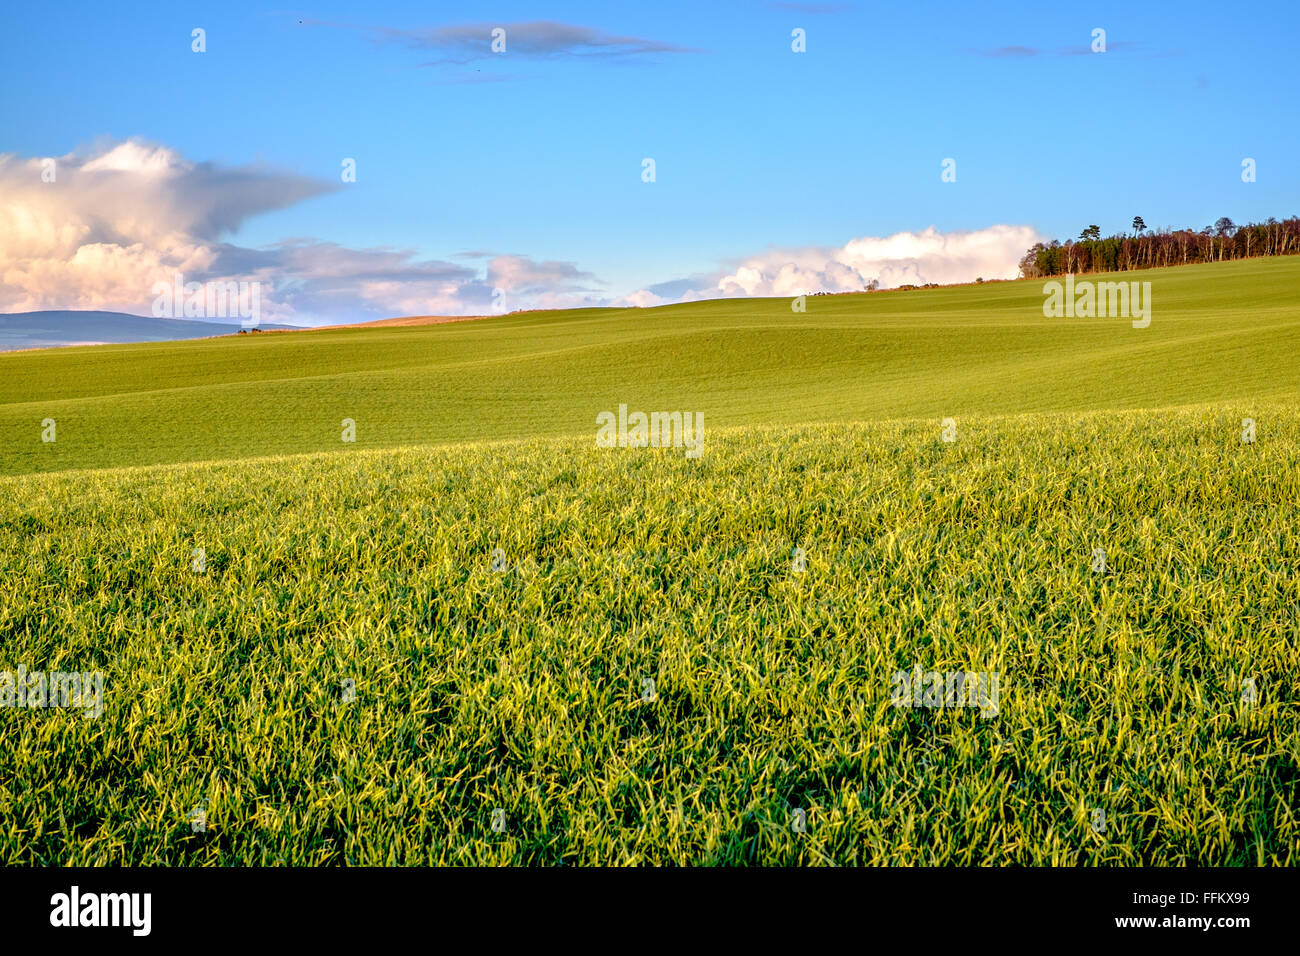 Des champs verts de grains de seigle Orge Avoine Blé maïs poussent dans les montagnes de l'Ecosse. Beau ciel bleu avec nuages majestueux. Banque D'Images